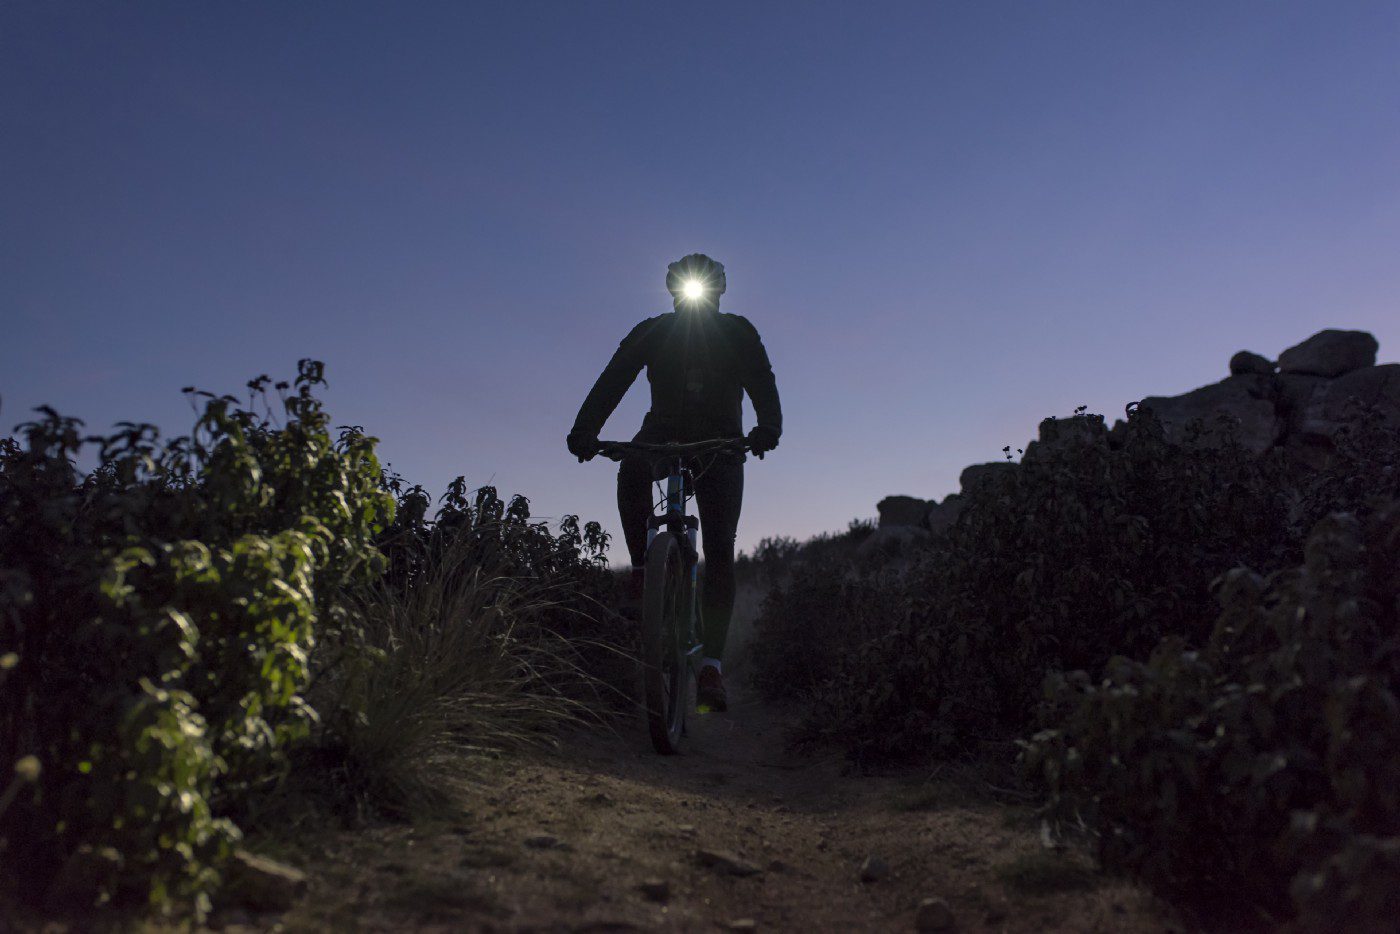 Un cycliste avance dans la nuit guidé par une lampe frontale